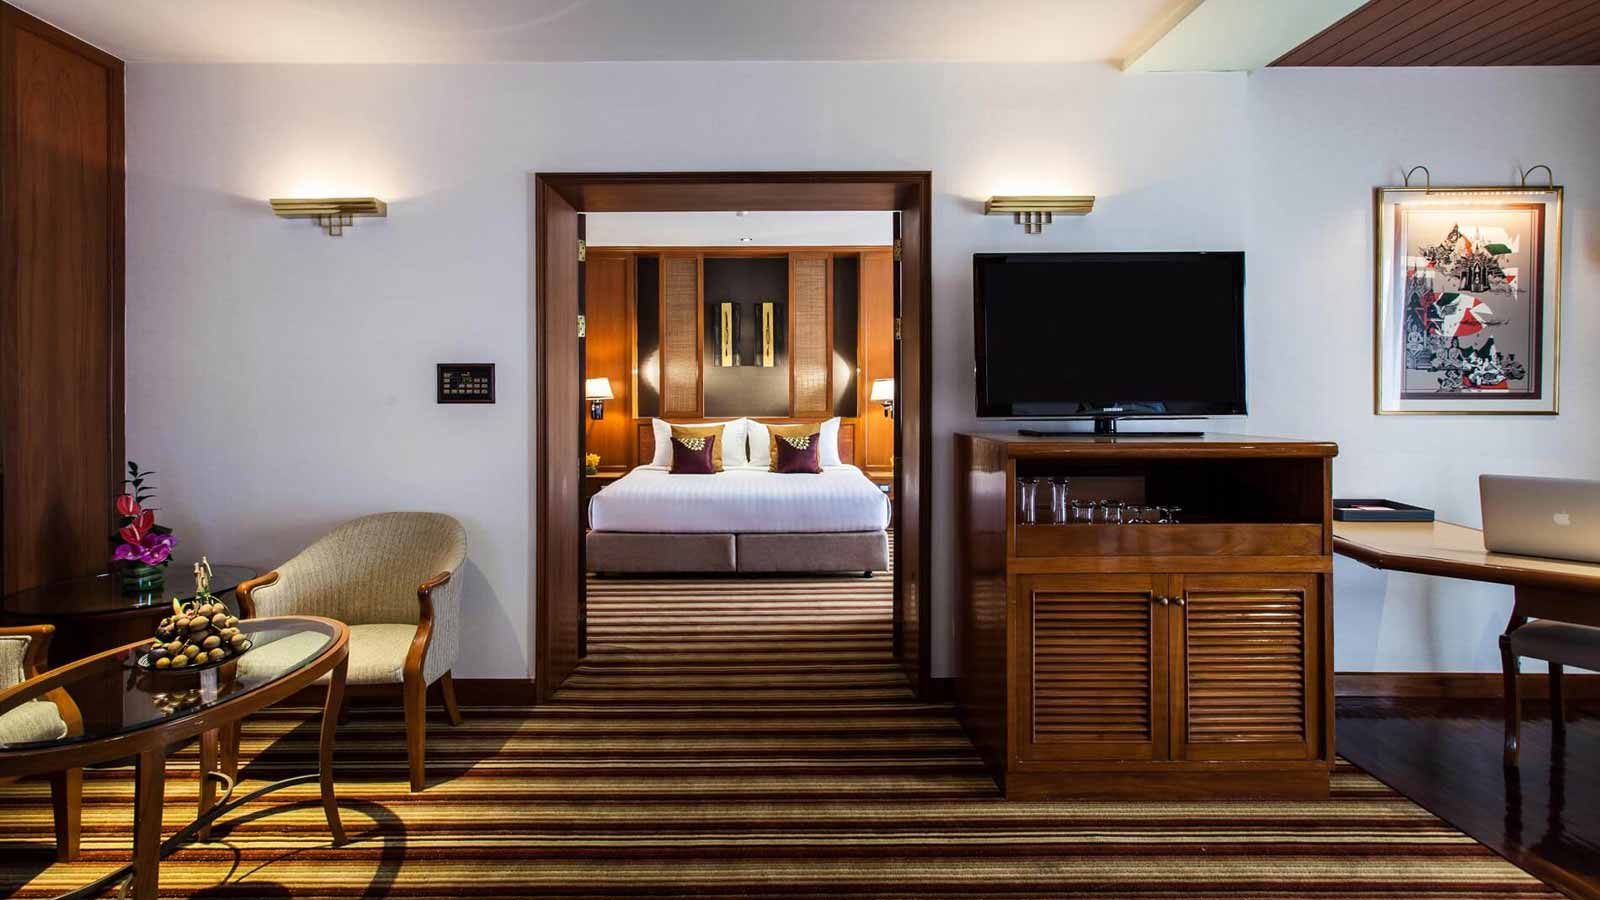 ห้องนอนและห้องนั่งเล่น - ห้องสวีท 1 ห้องนอน - โรงแรม อมารี ดอนเมือง แอร์พอร์ต กรุงเทพ